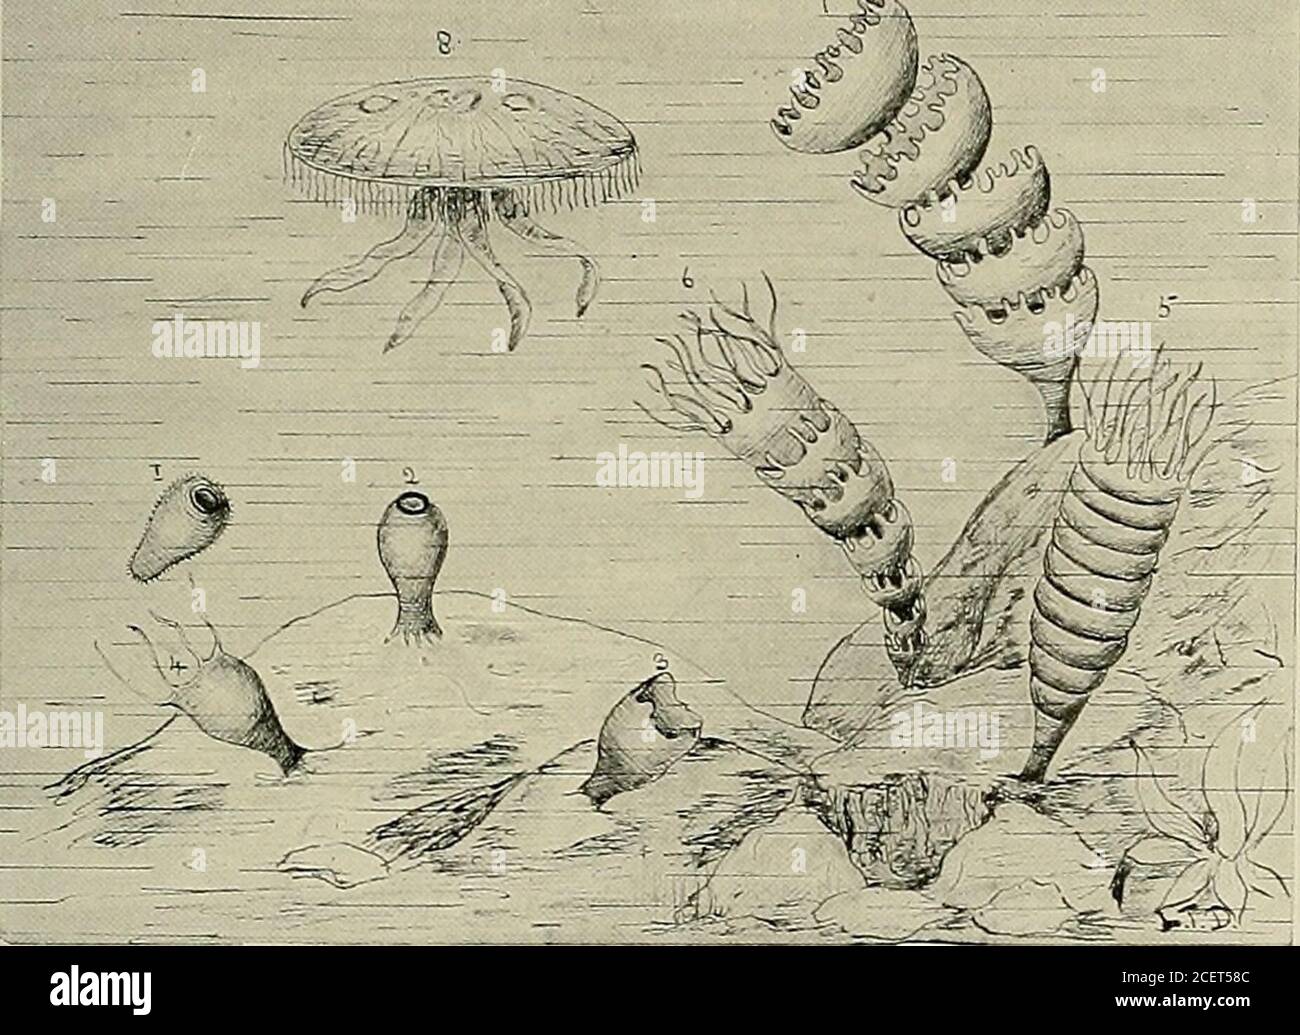 Tierleben und die Welt der Natur; EIN Magazin der Naturgeschichte. r Arten  von Bryozoen haben den Vogelkopf-Prozess durch hohle, peitschenartige Tangas  ersetzt, genannt Laschen, die in ständiger Bewegung sind, die das